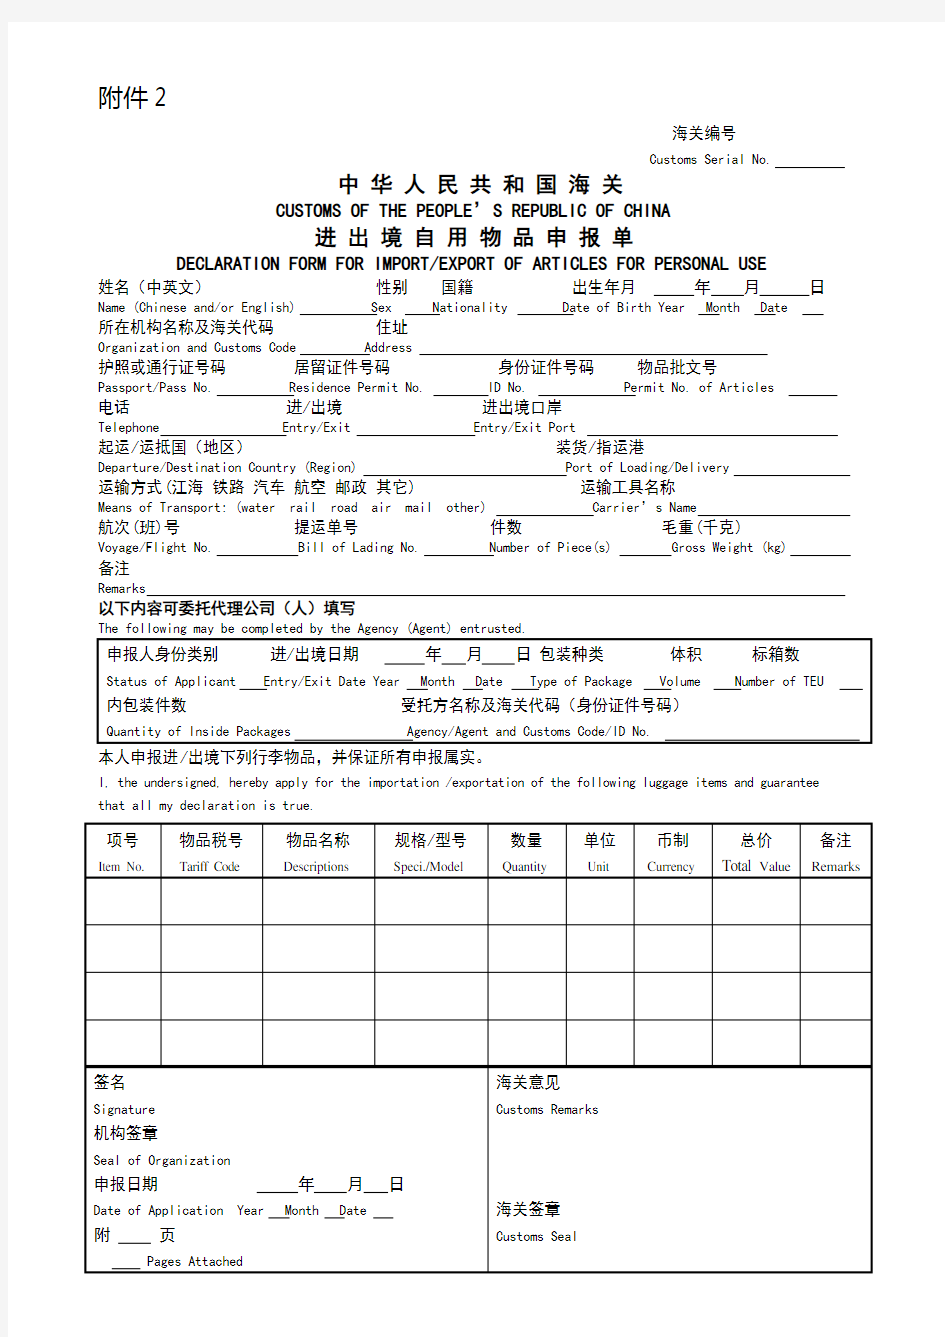 中华人民共和国海关进出境自用物品申报单